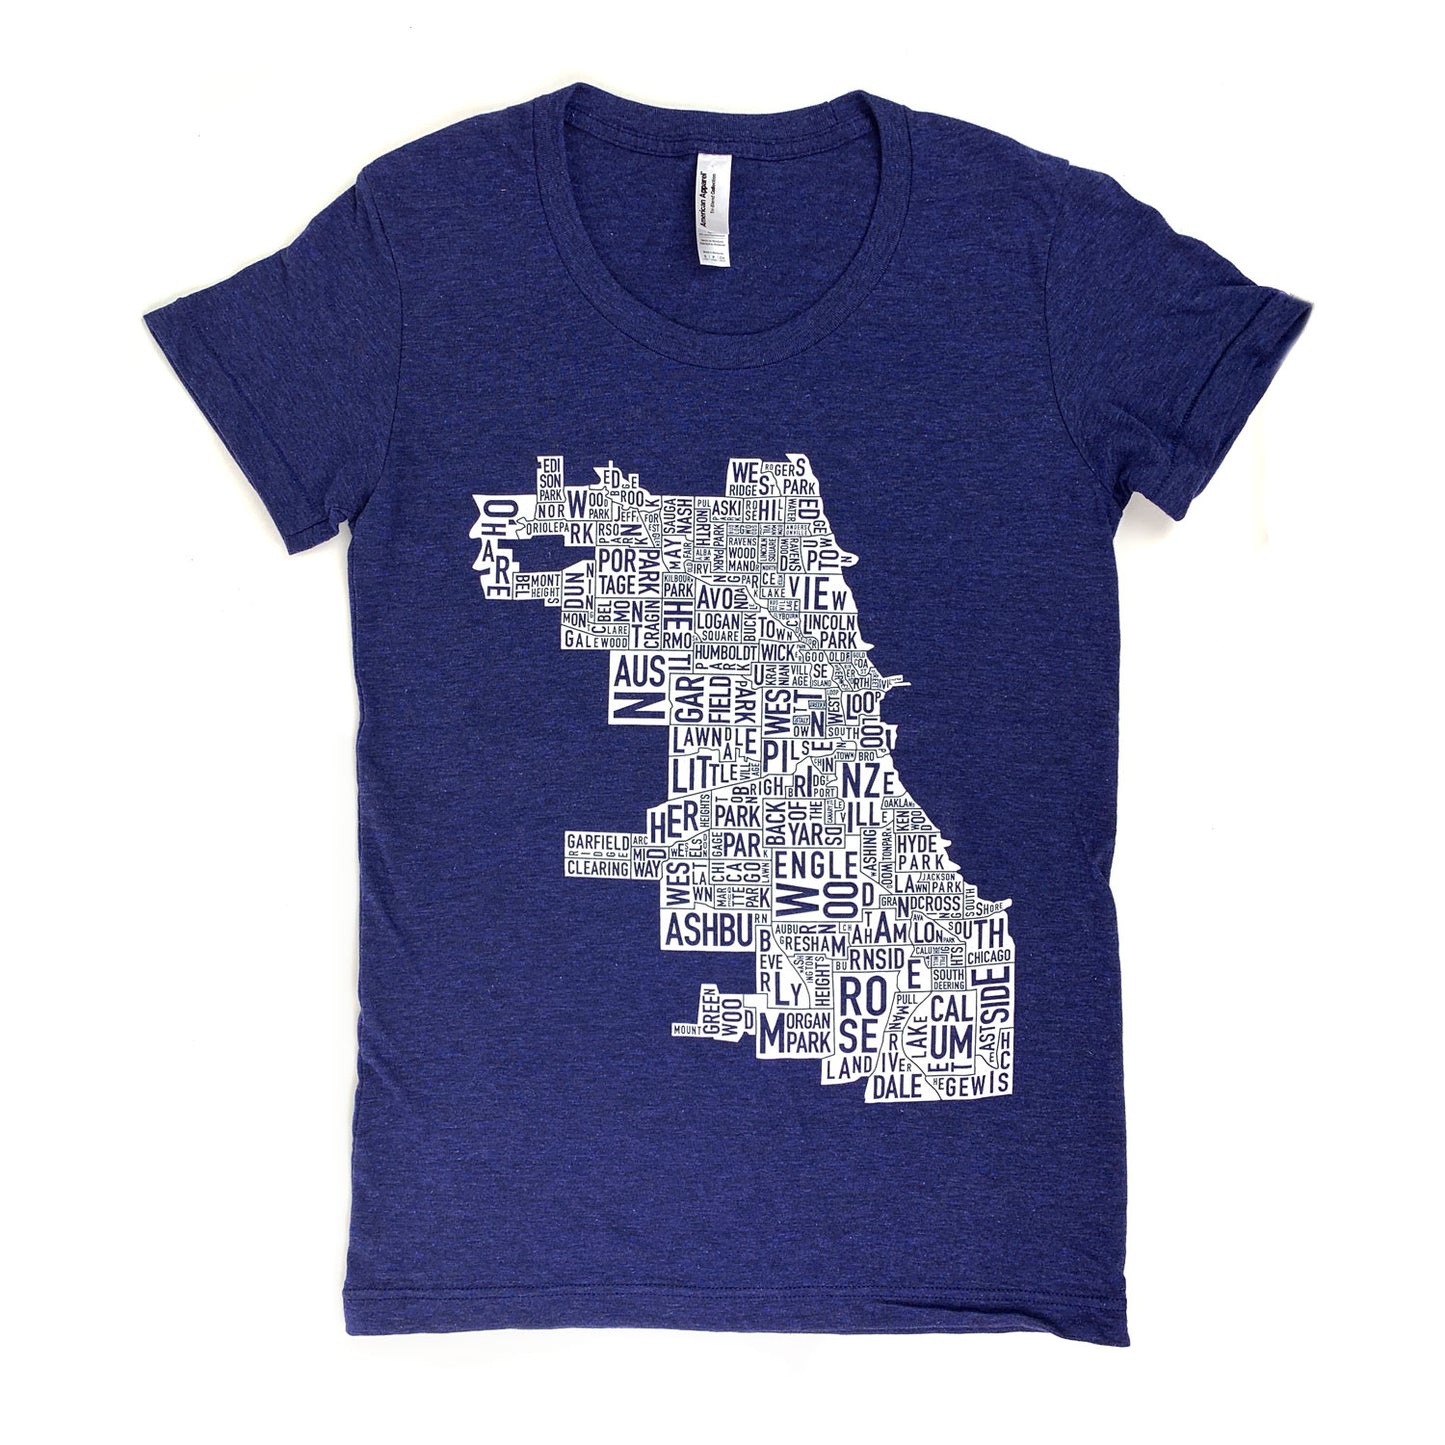 Chicago Neighborhood Map Tshirt